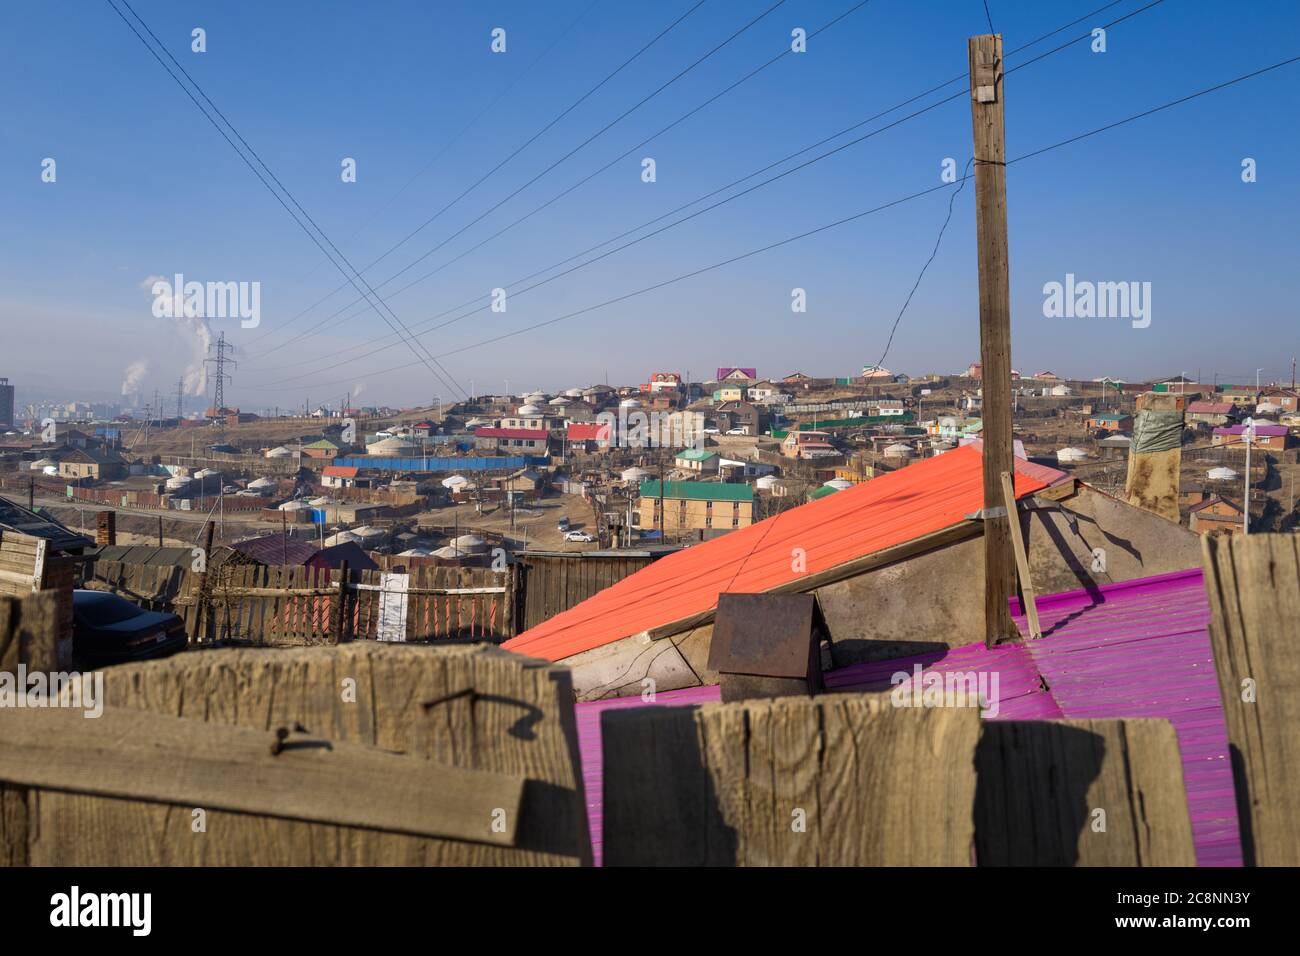 Toits colorés, câbles télégraphiques, pollution à Oulan Bataar / Oulan Bator, Mongolie. Banque D'Images